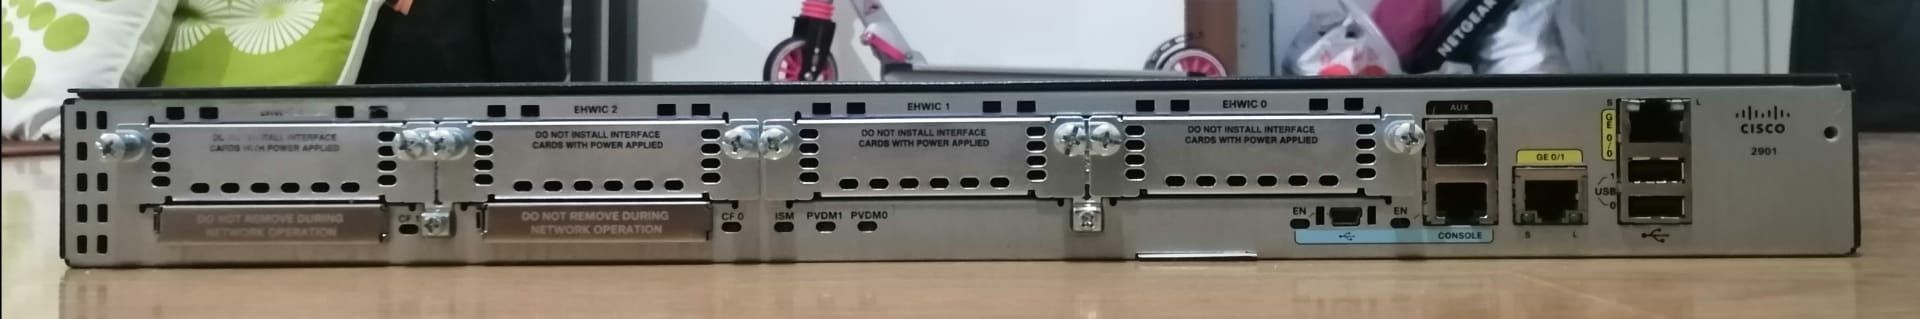 Router Cisco 2901/K9 V01